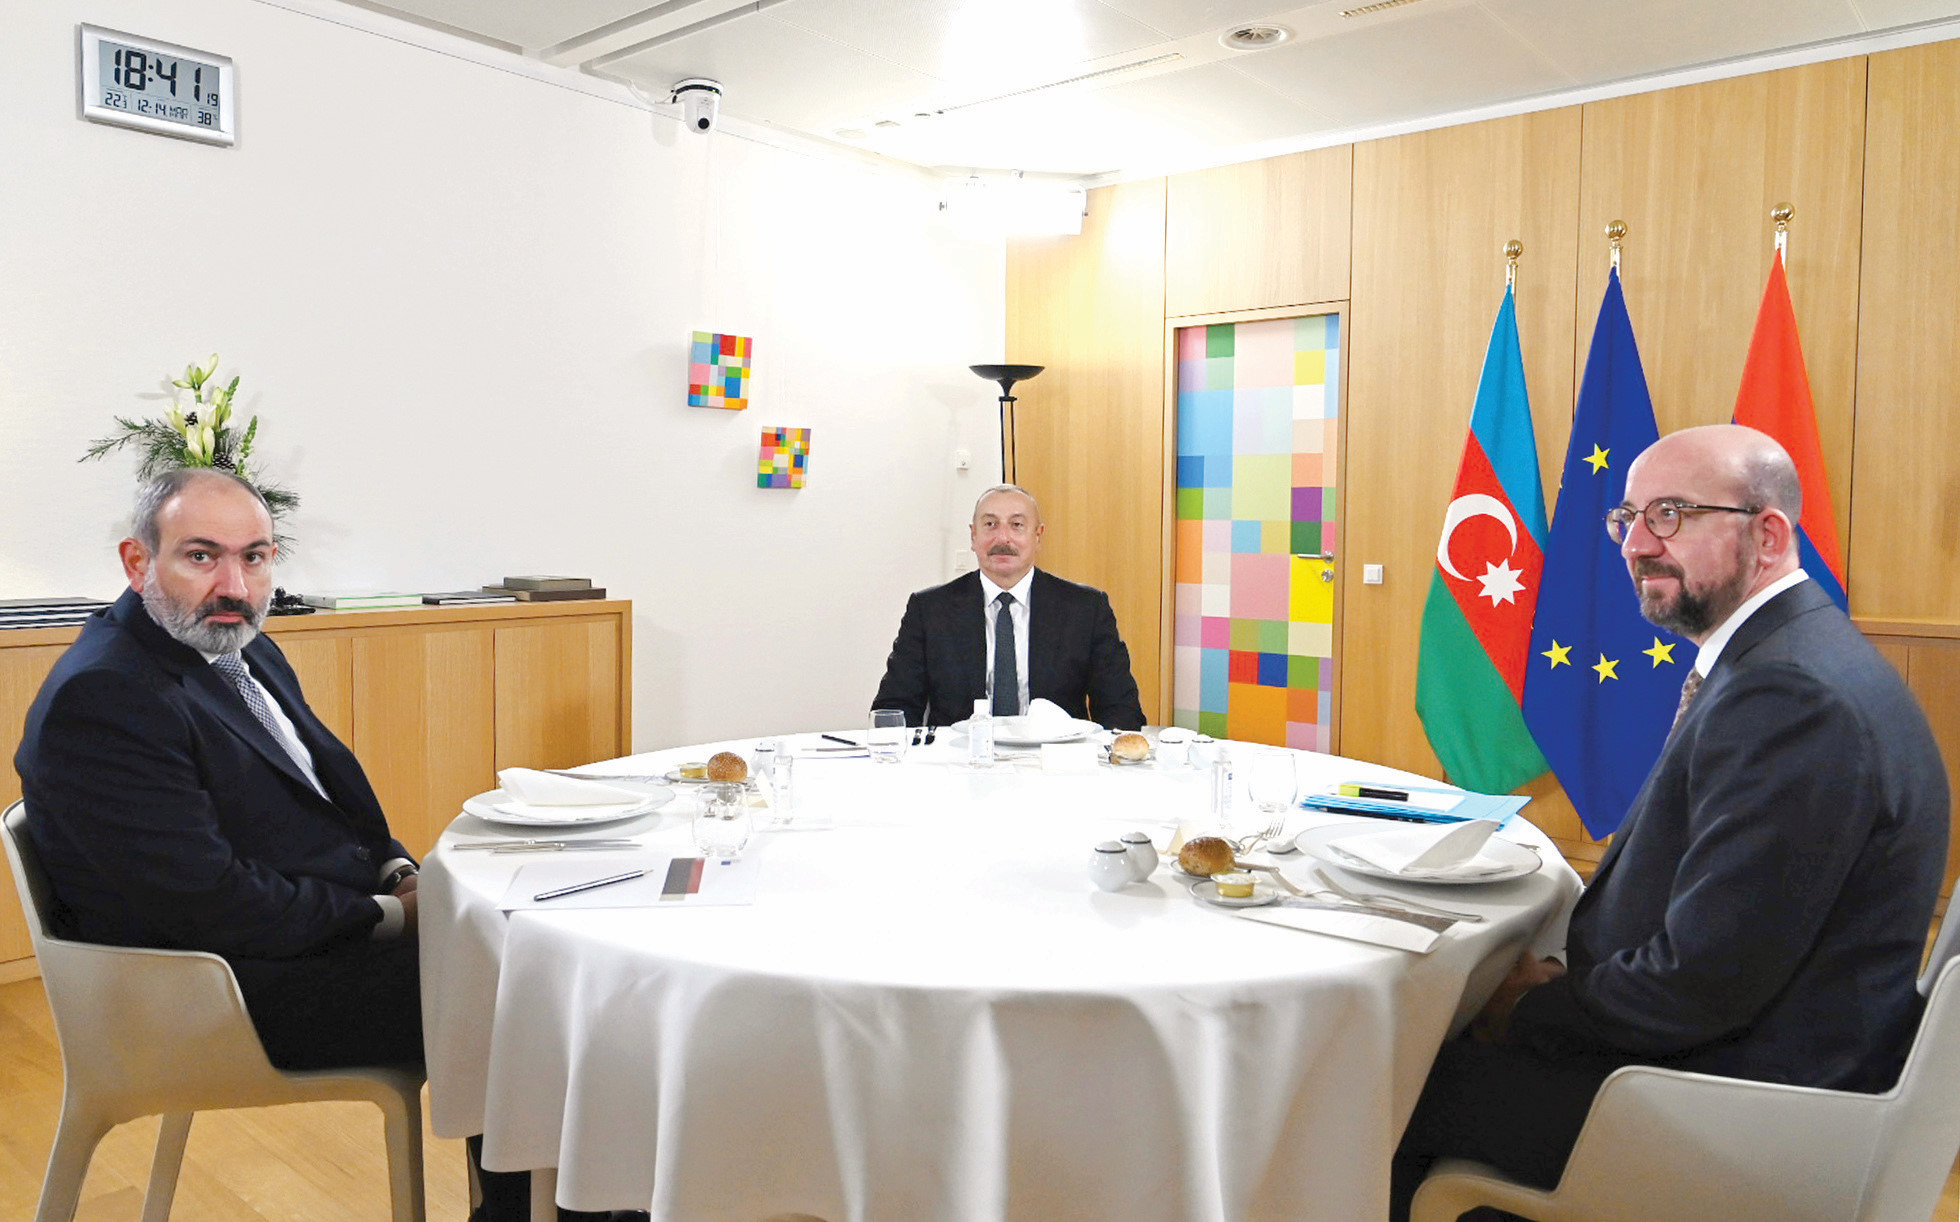 Brüksel’de düzenlenen ‘Doğu Ortaklığı Zirvesi’ öncesinde Azerbaycan Cumhurbaşkanı İlham Aliyev ile Ermenistan Başbakanı Nikol Paşinyan, AB Konseyi nBaşkanı Charles Michel ile üçlü toplantıda bir araya gelmişti.n